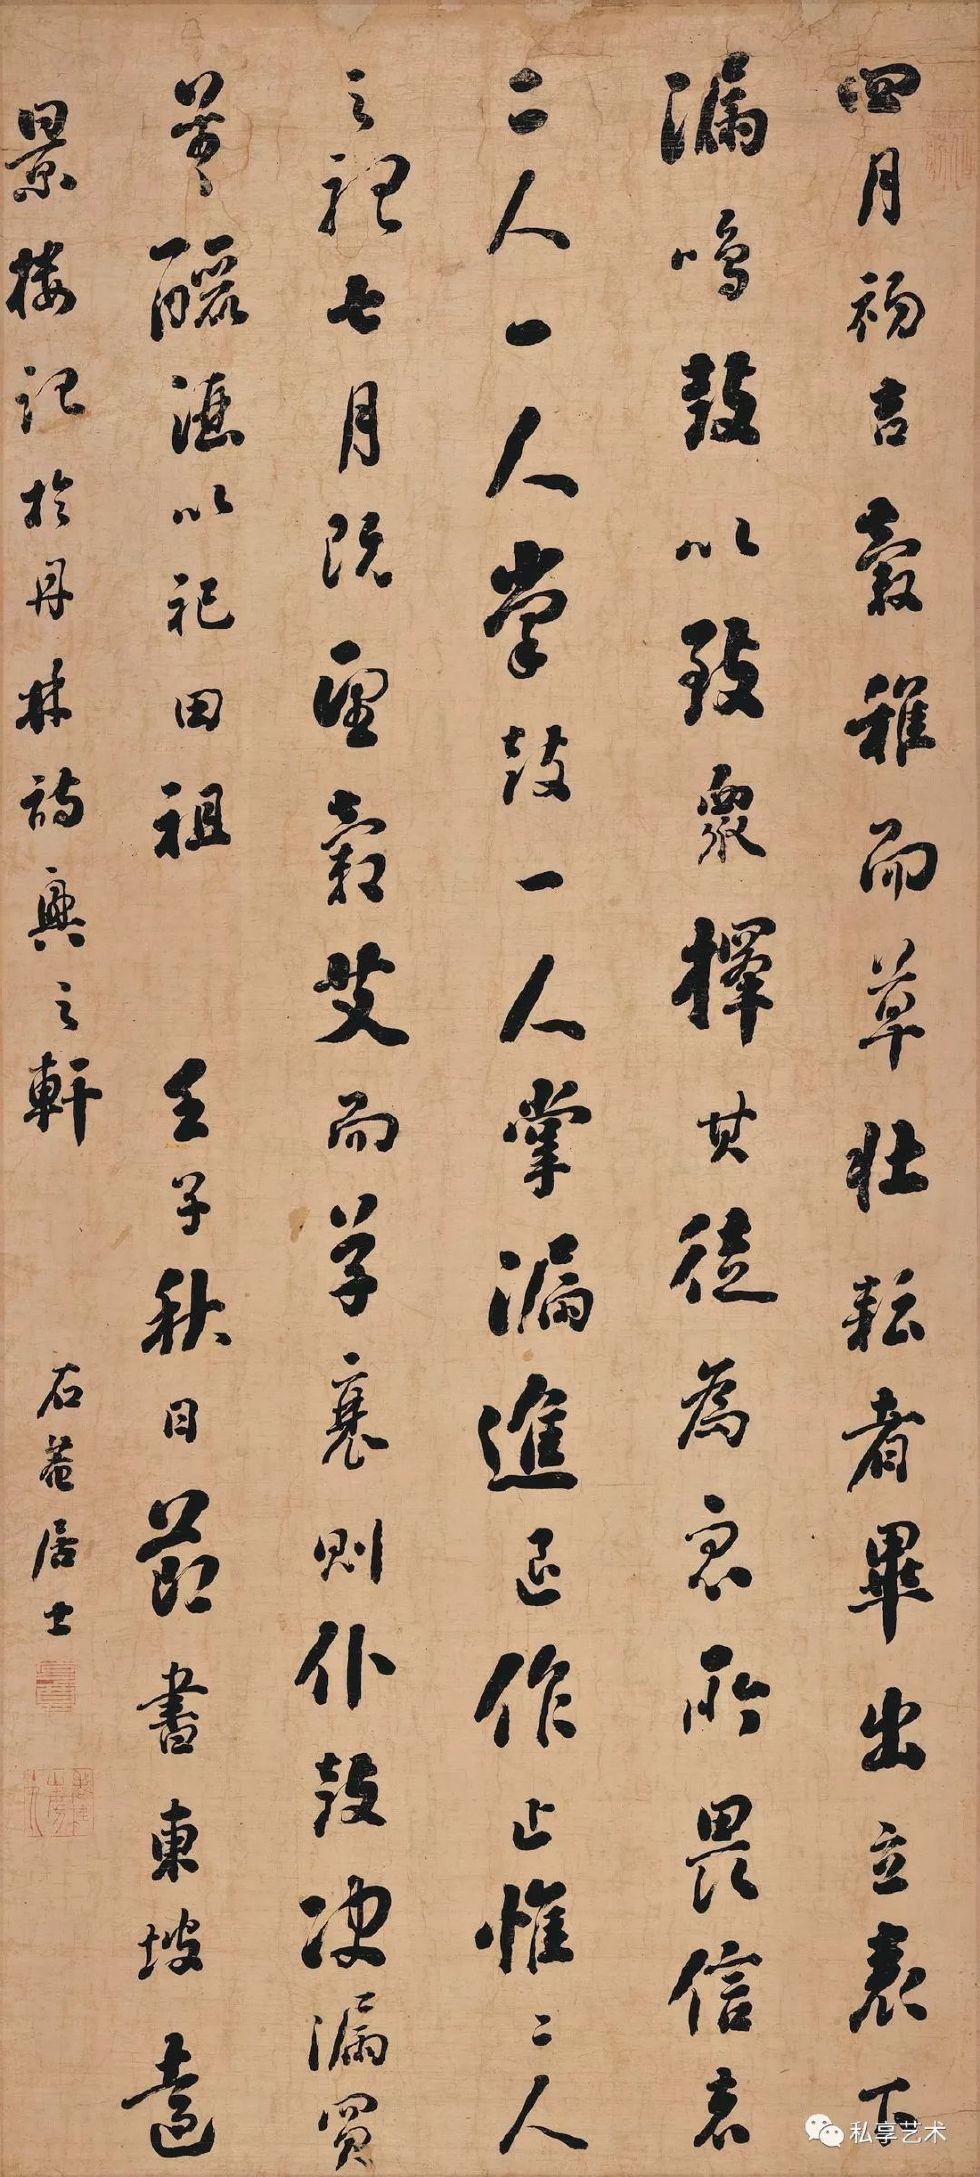 辽宁省博物馆藏丨刘墉书法《行书远景楼记轴》